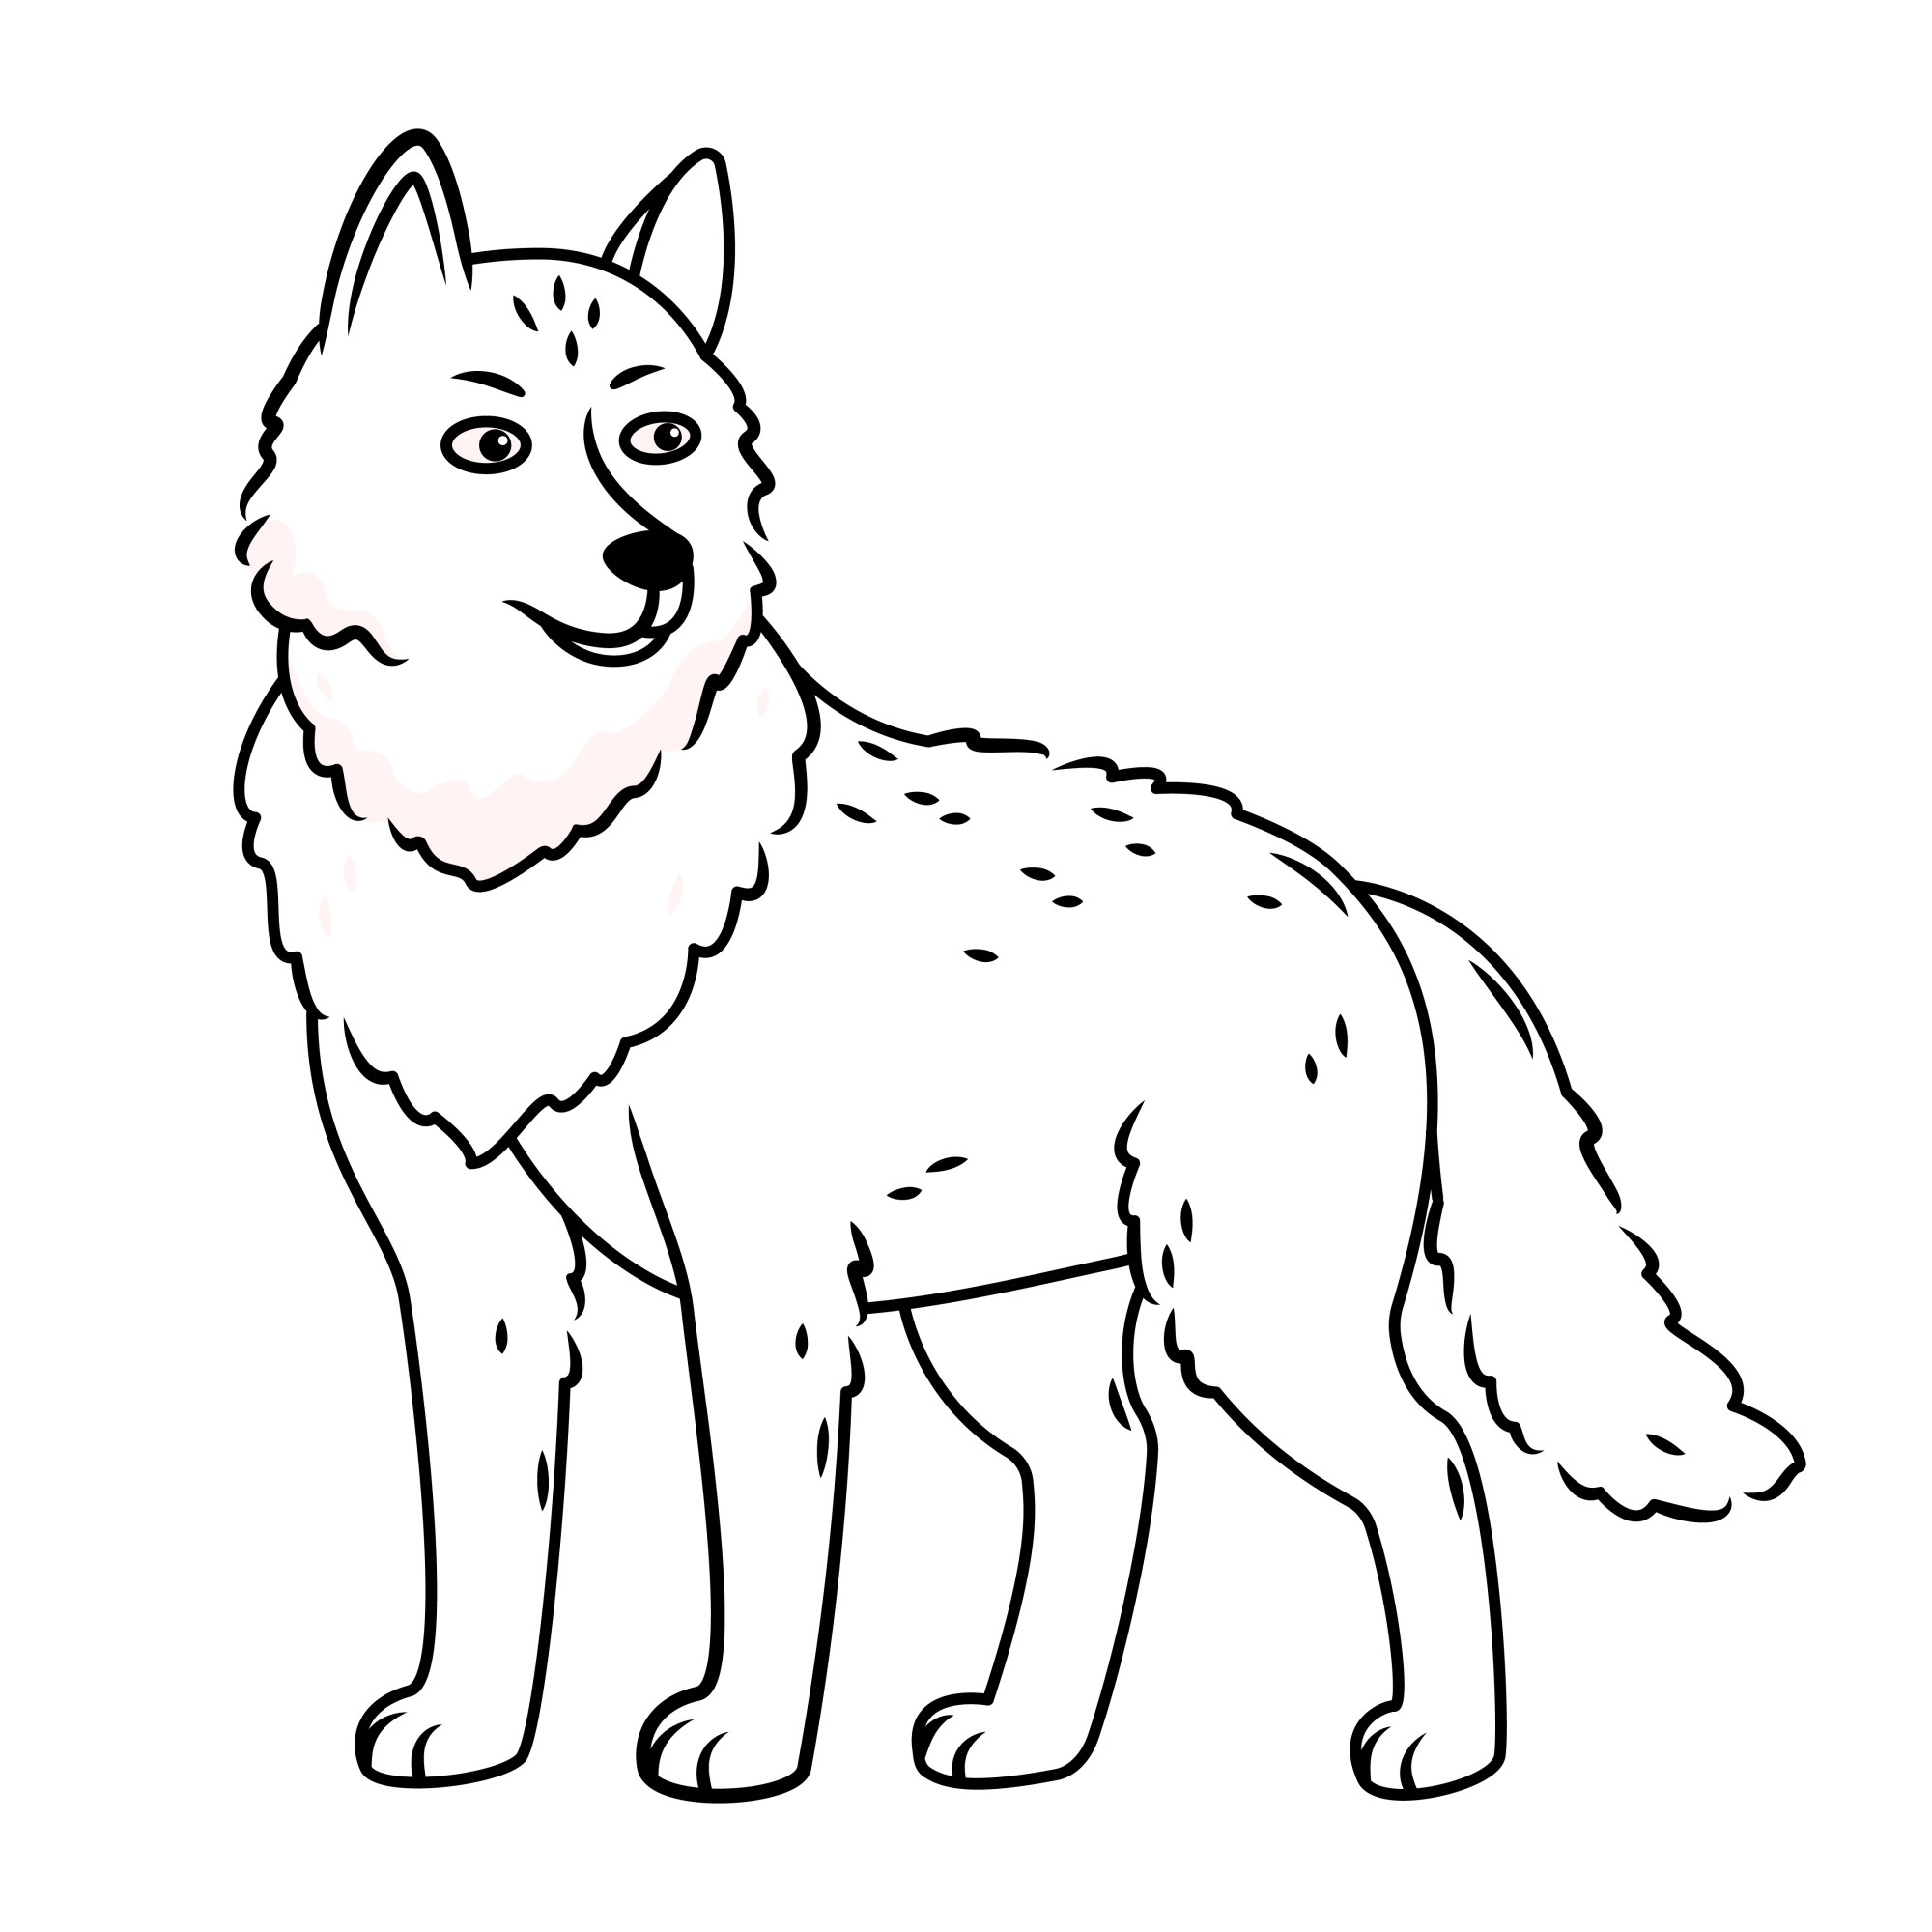 Раскраска для детей: серый волк стоит на белом фоне